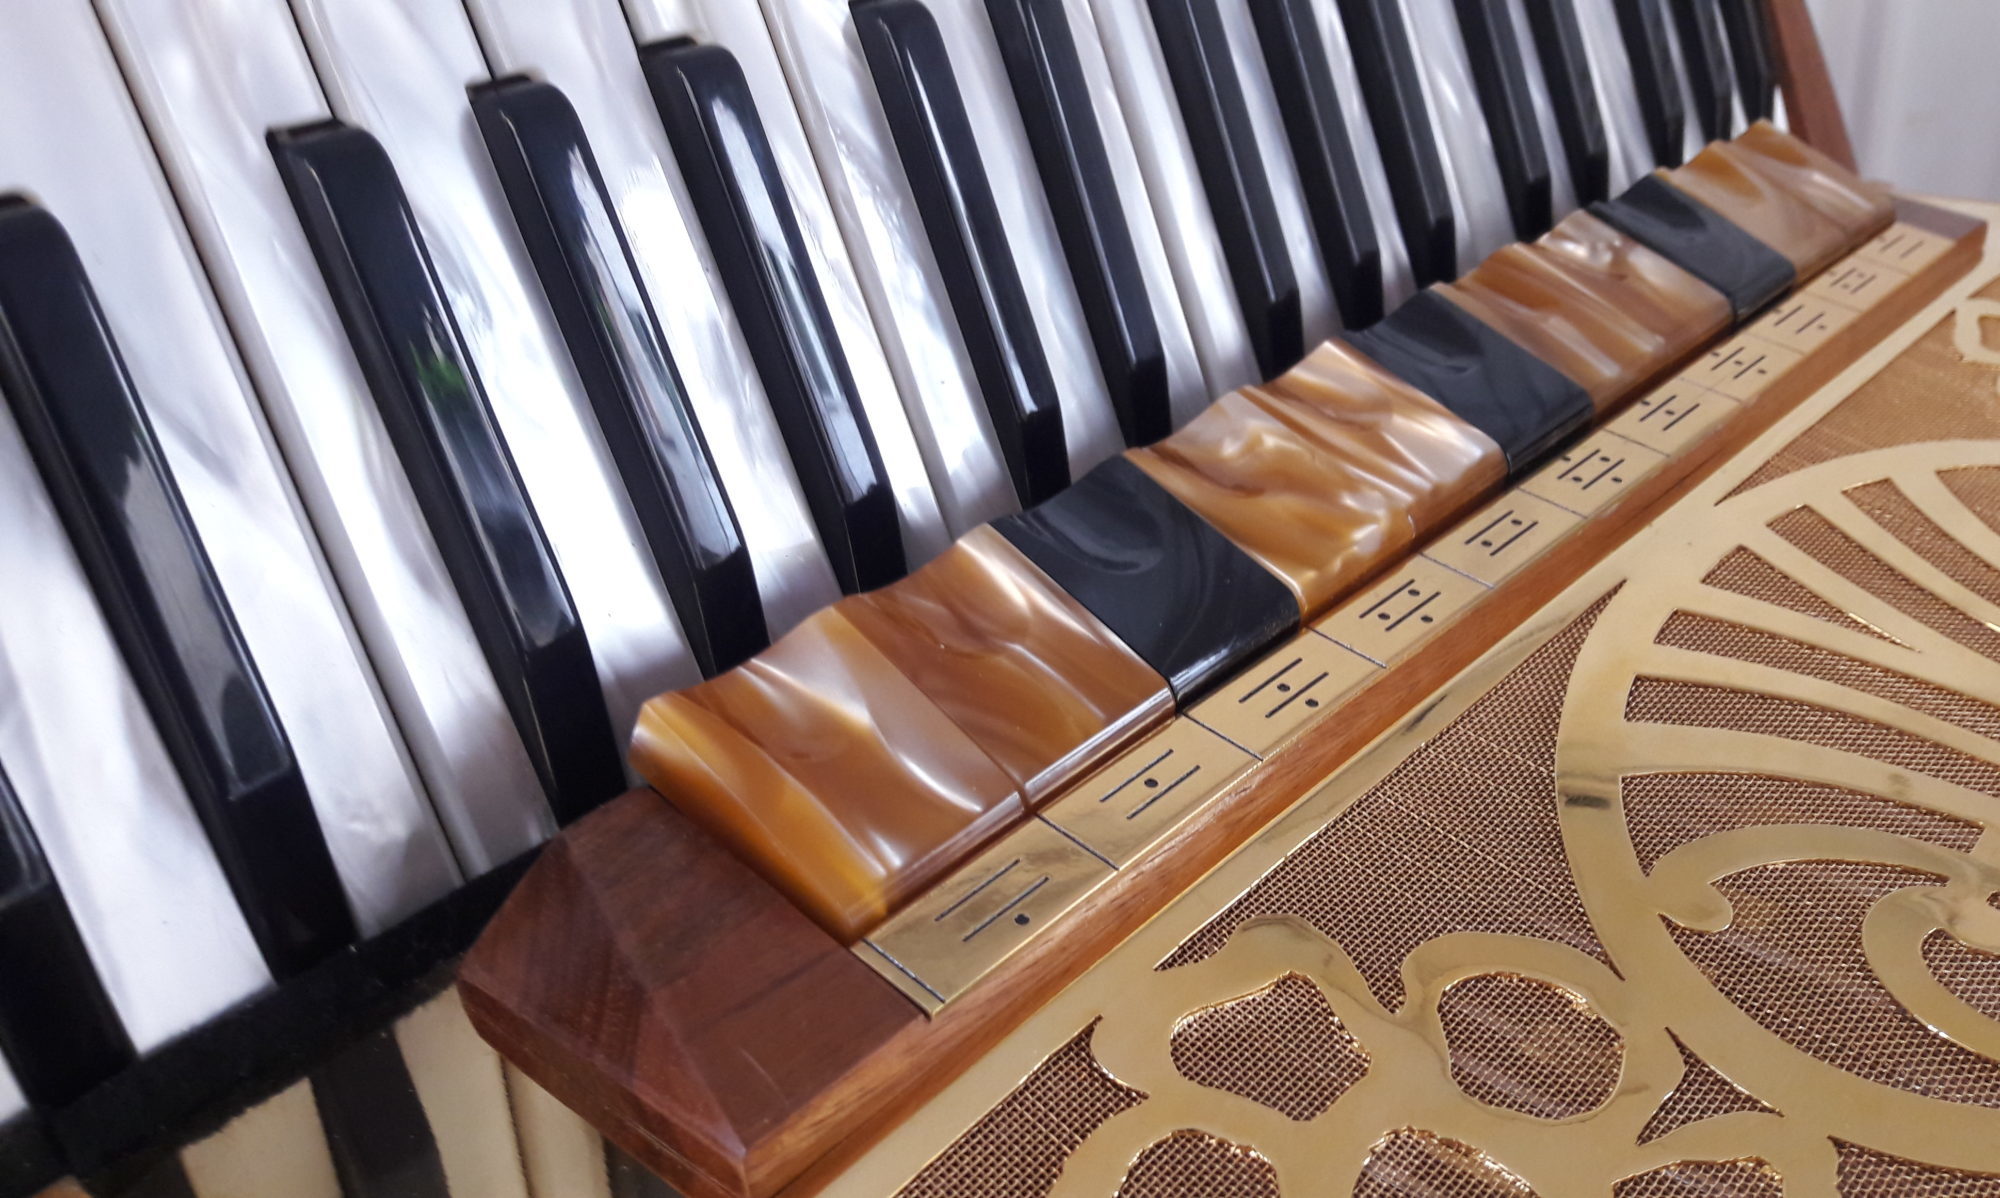 La Fisarmonica, uno strumento moderno e speciale